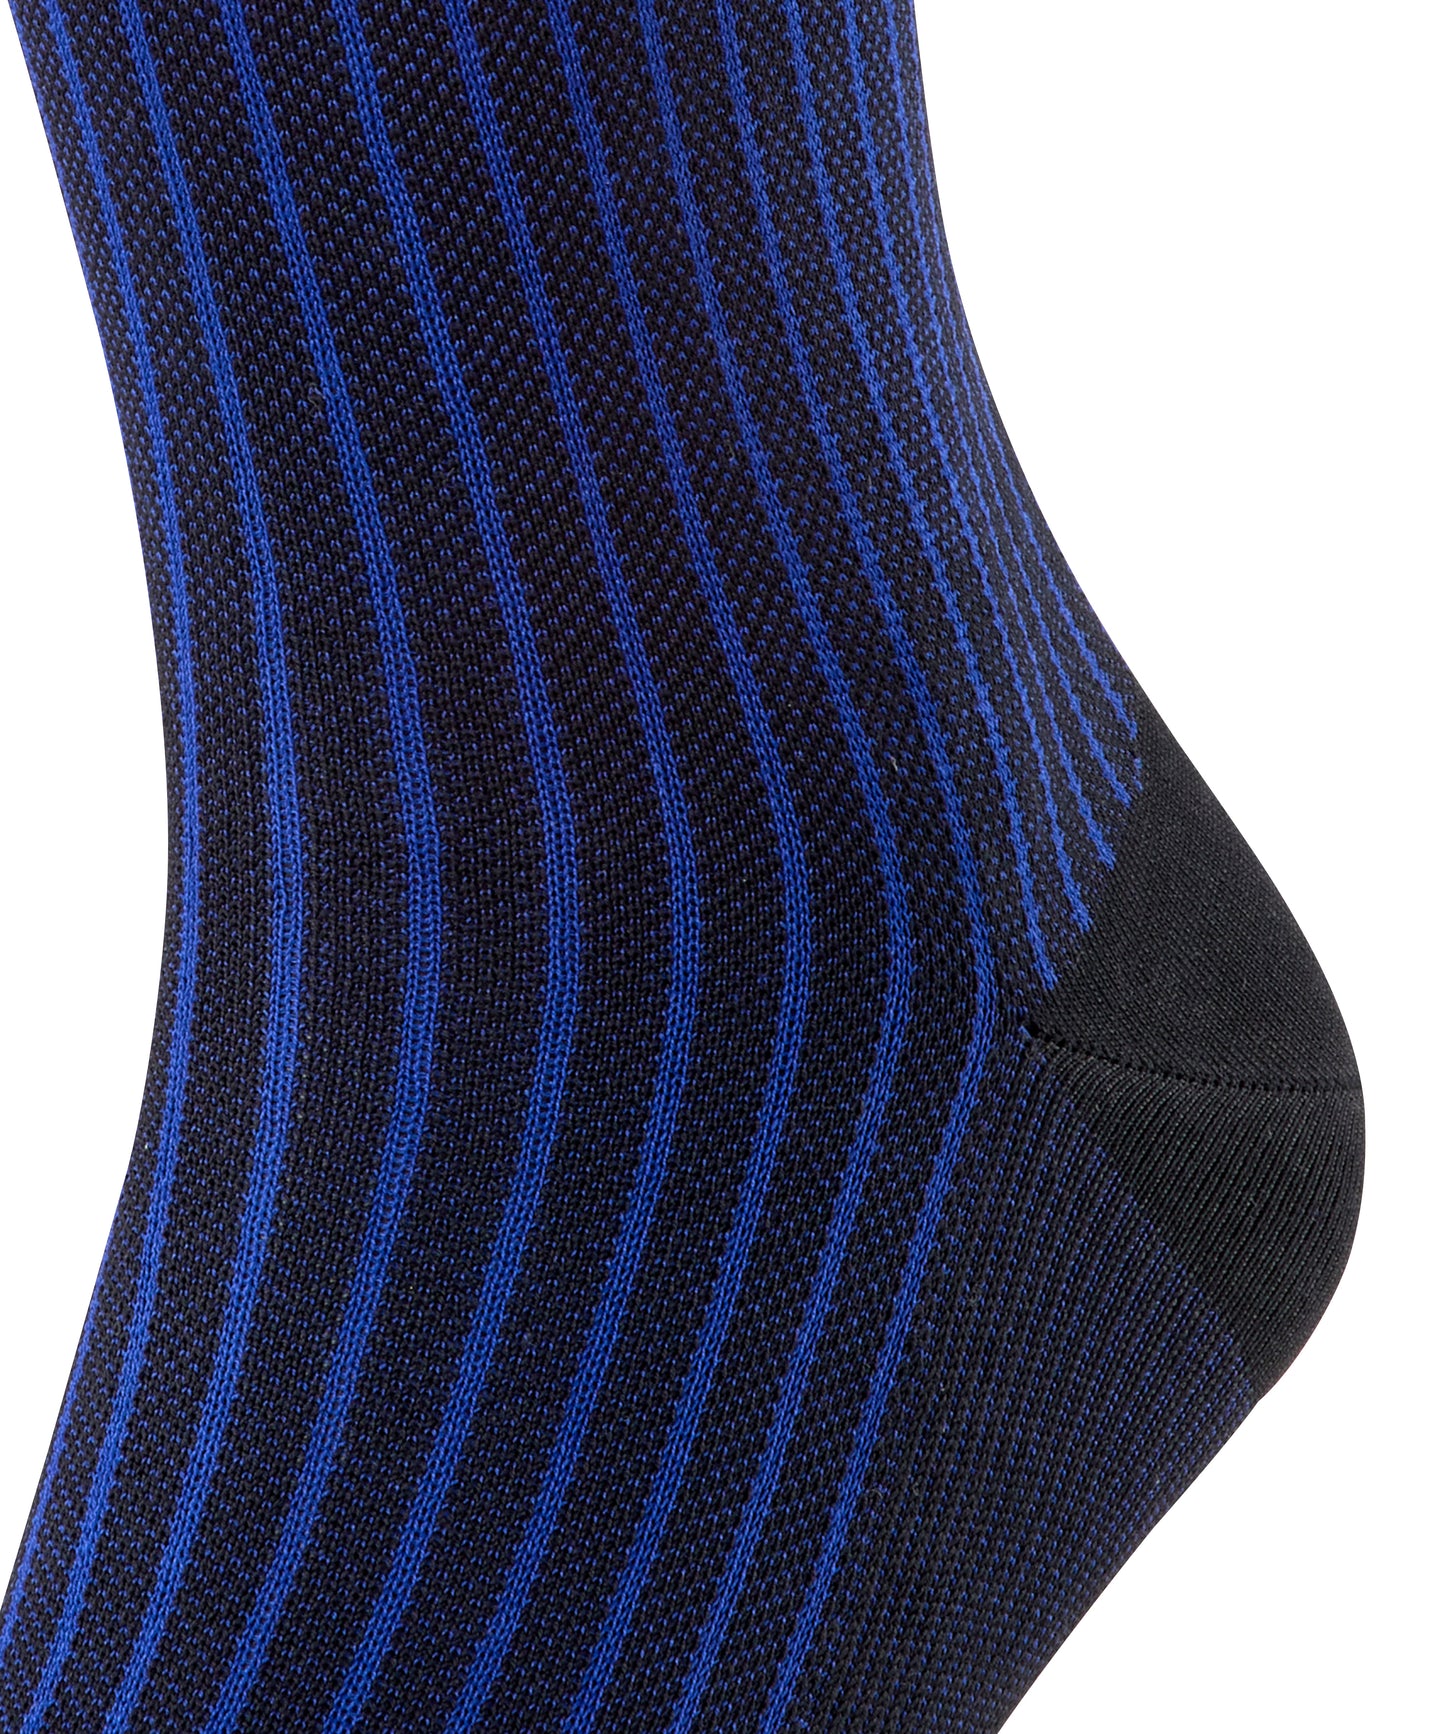 Oxford Stripe Socks